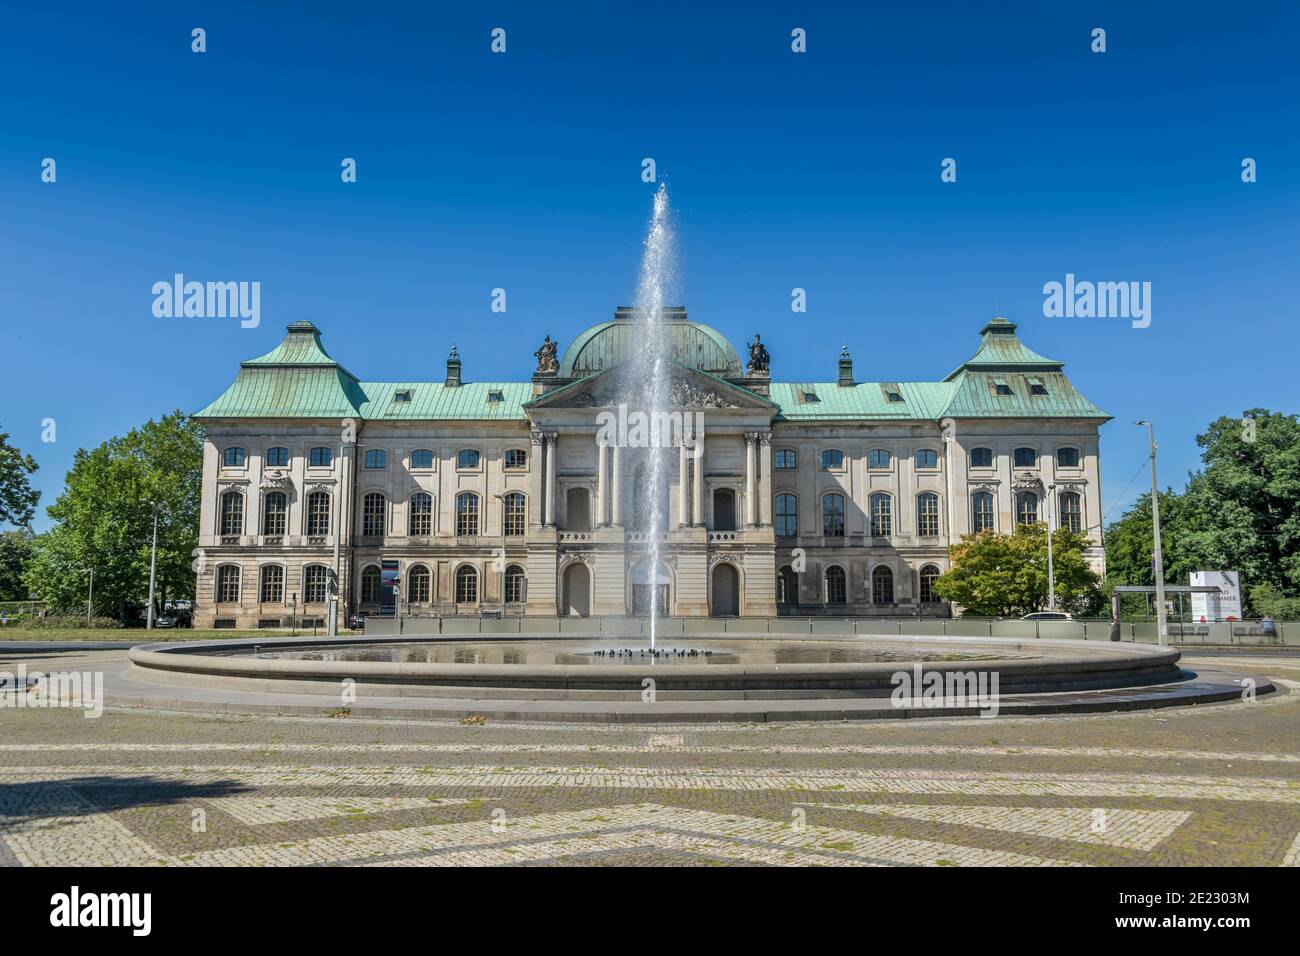 Japanisches Palais, Palaisplatz, Dresden, Sachsen, Deutschland Stock Photo